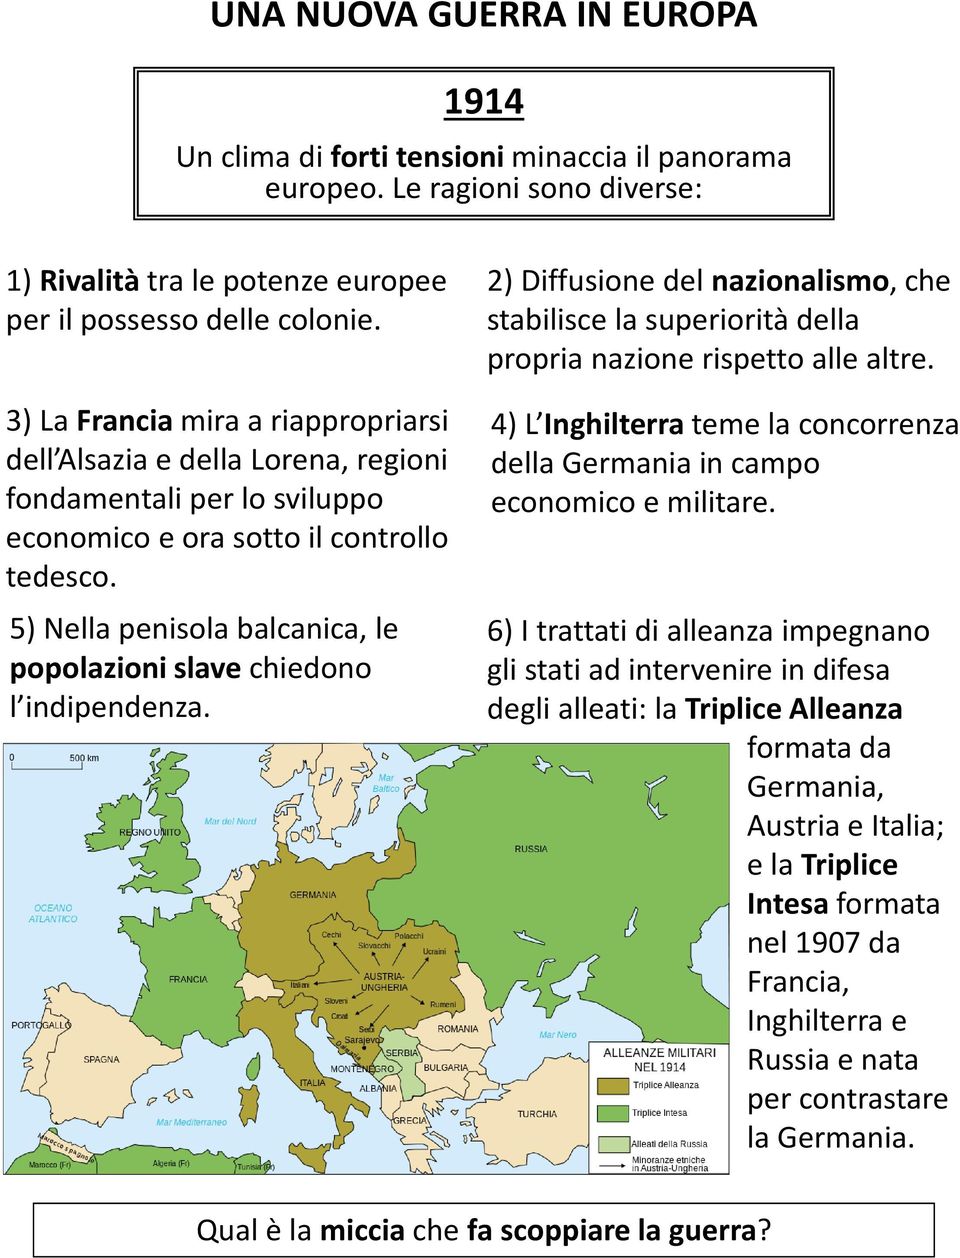 5) Nella penisola balcanica, le popolazioni slave chiedono l indipendenza. 2) Diffusione del nazionalismo, che stabilisce la superiorità della propria nazione rispetto alle altre.